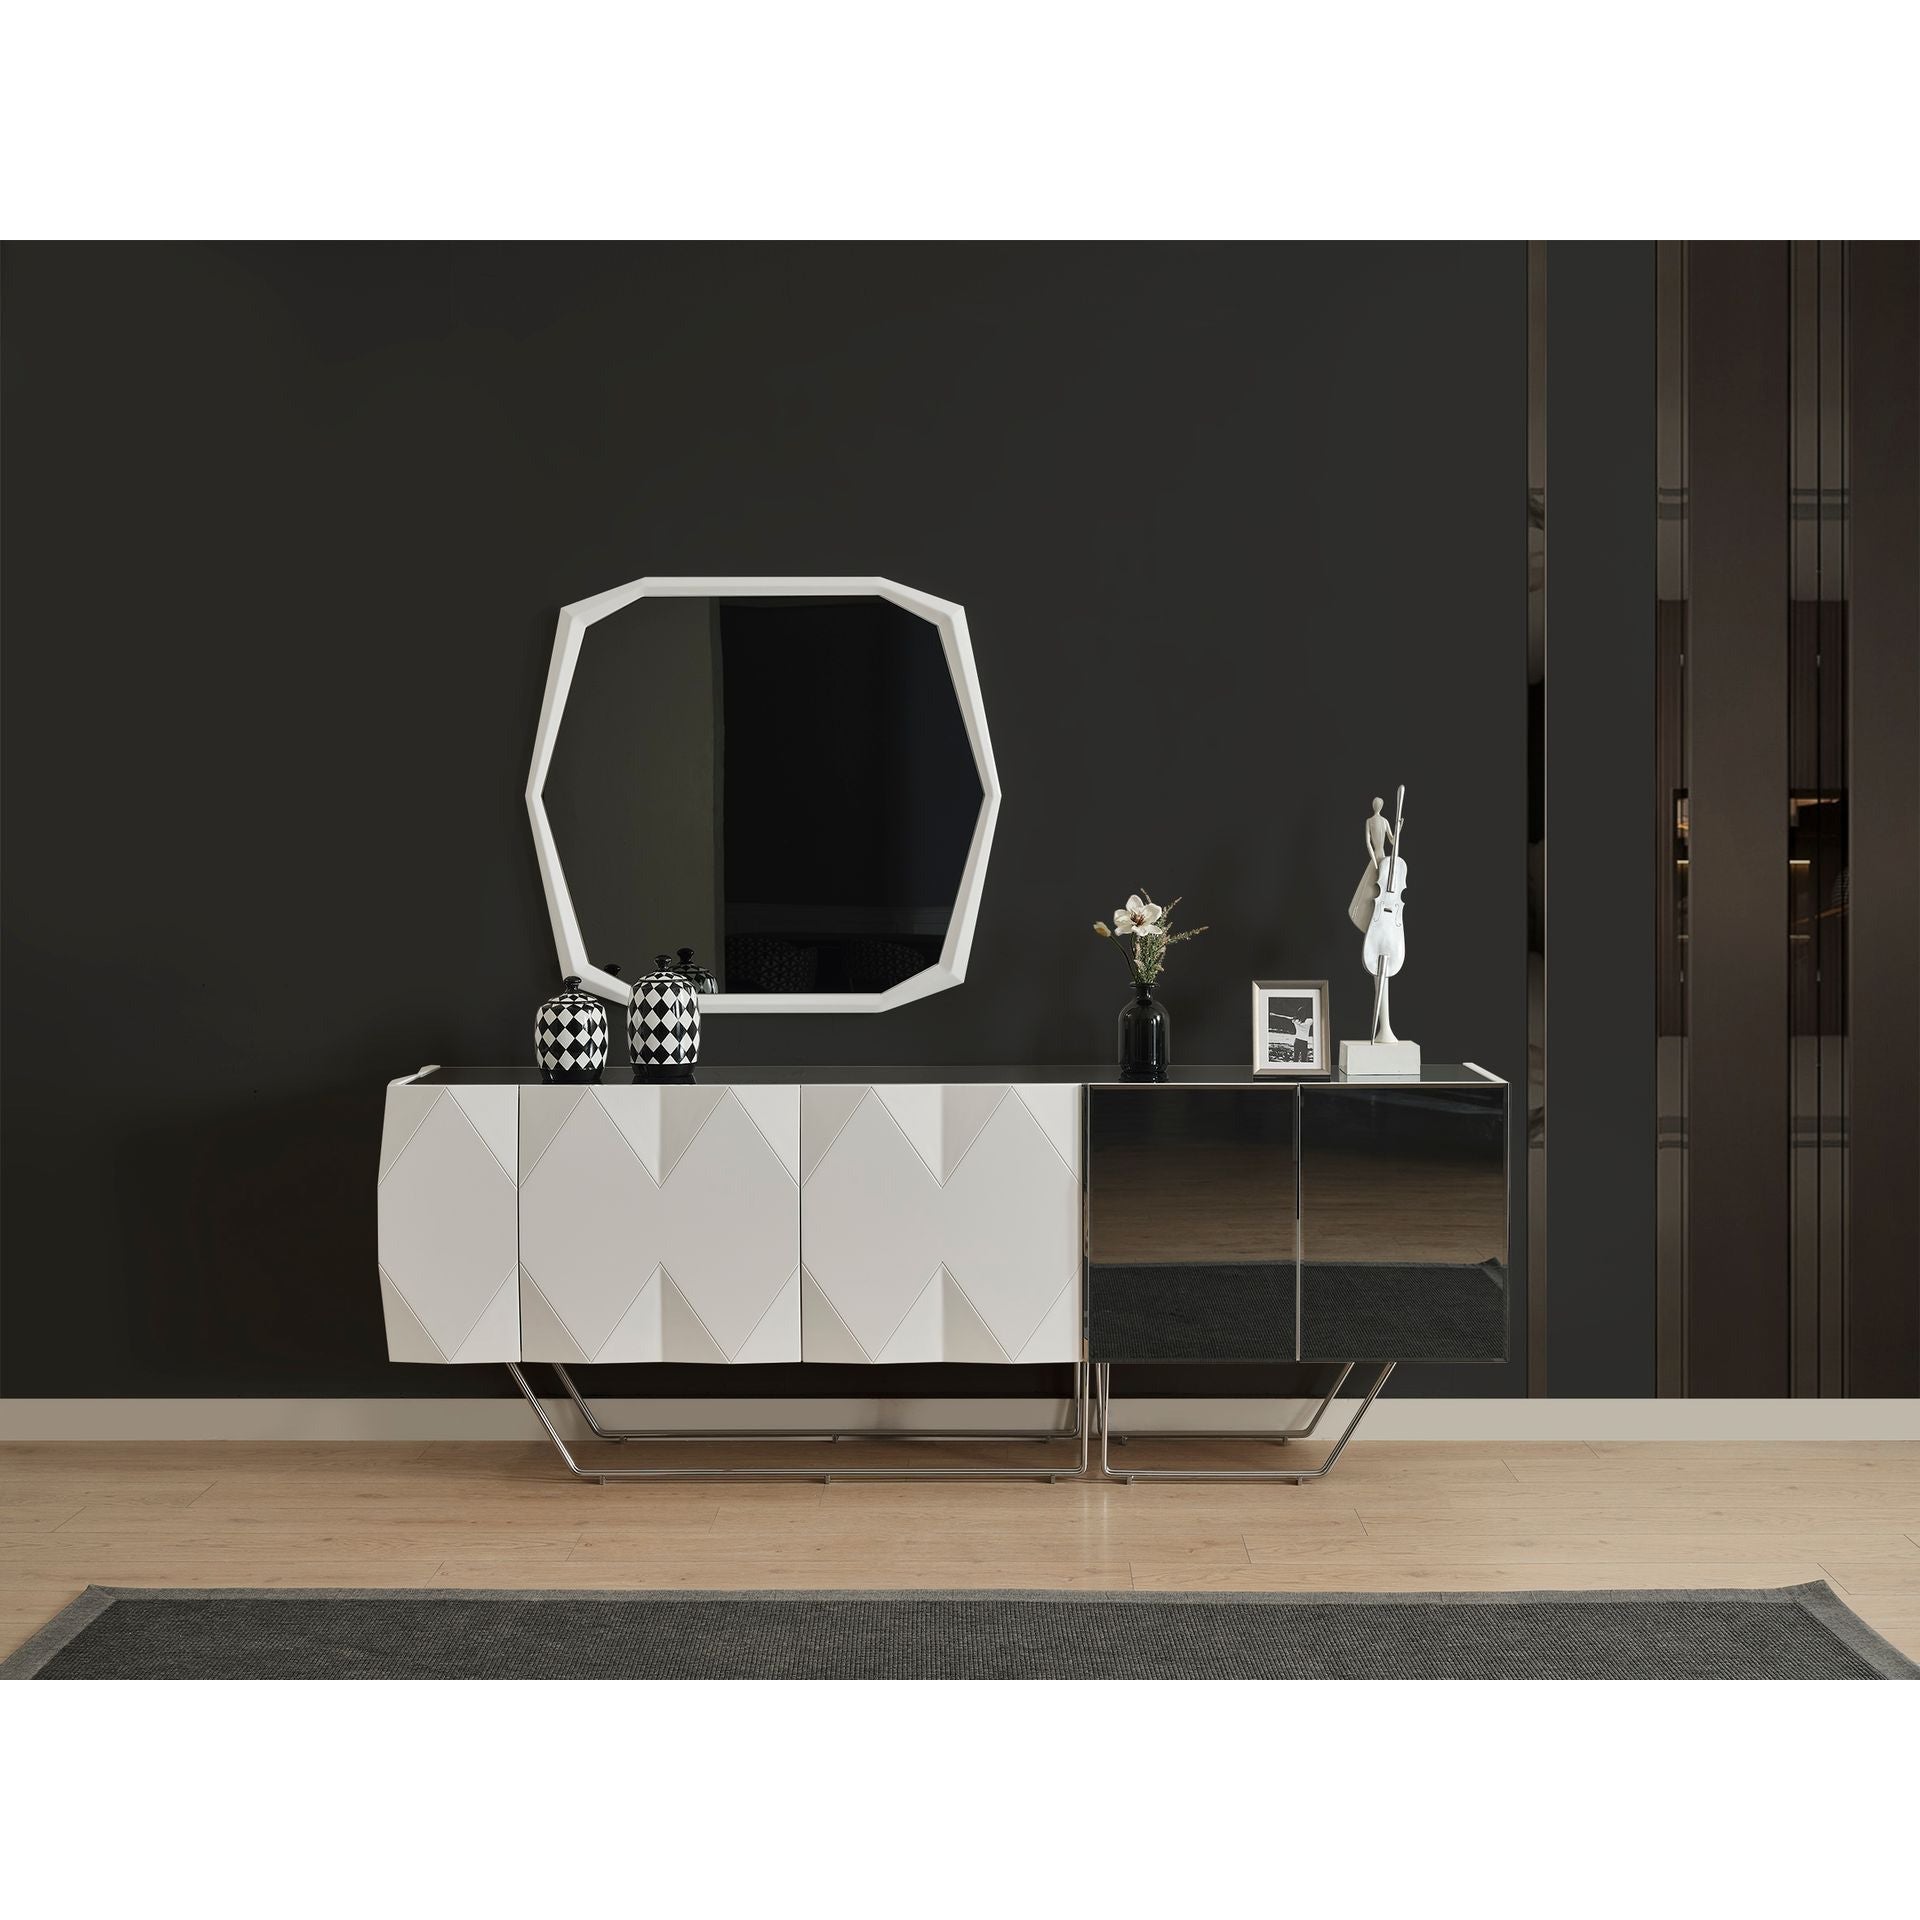 Koza Skänk - LINE Furniture Group